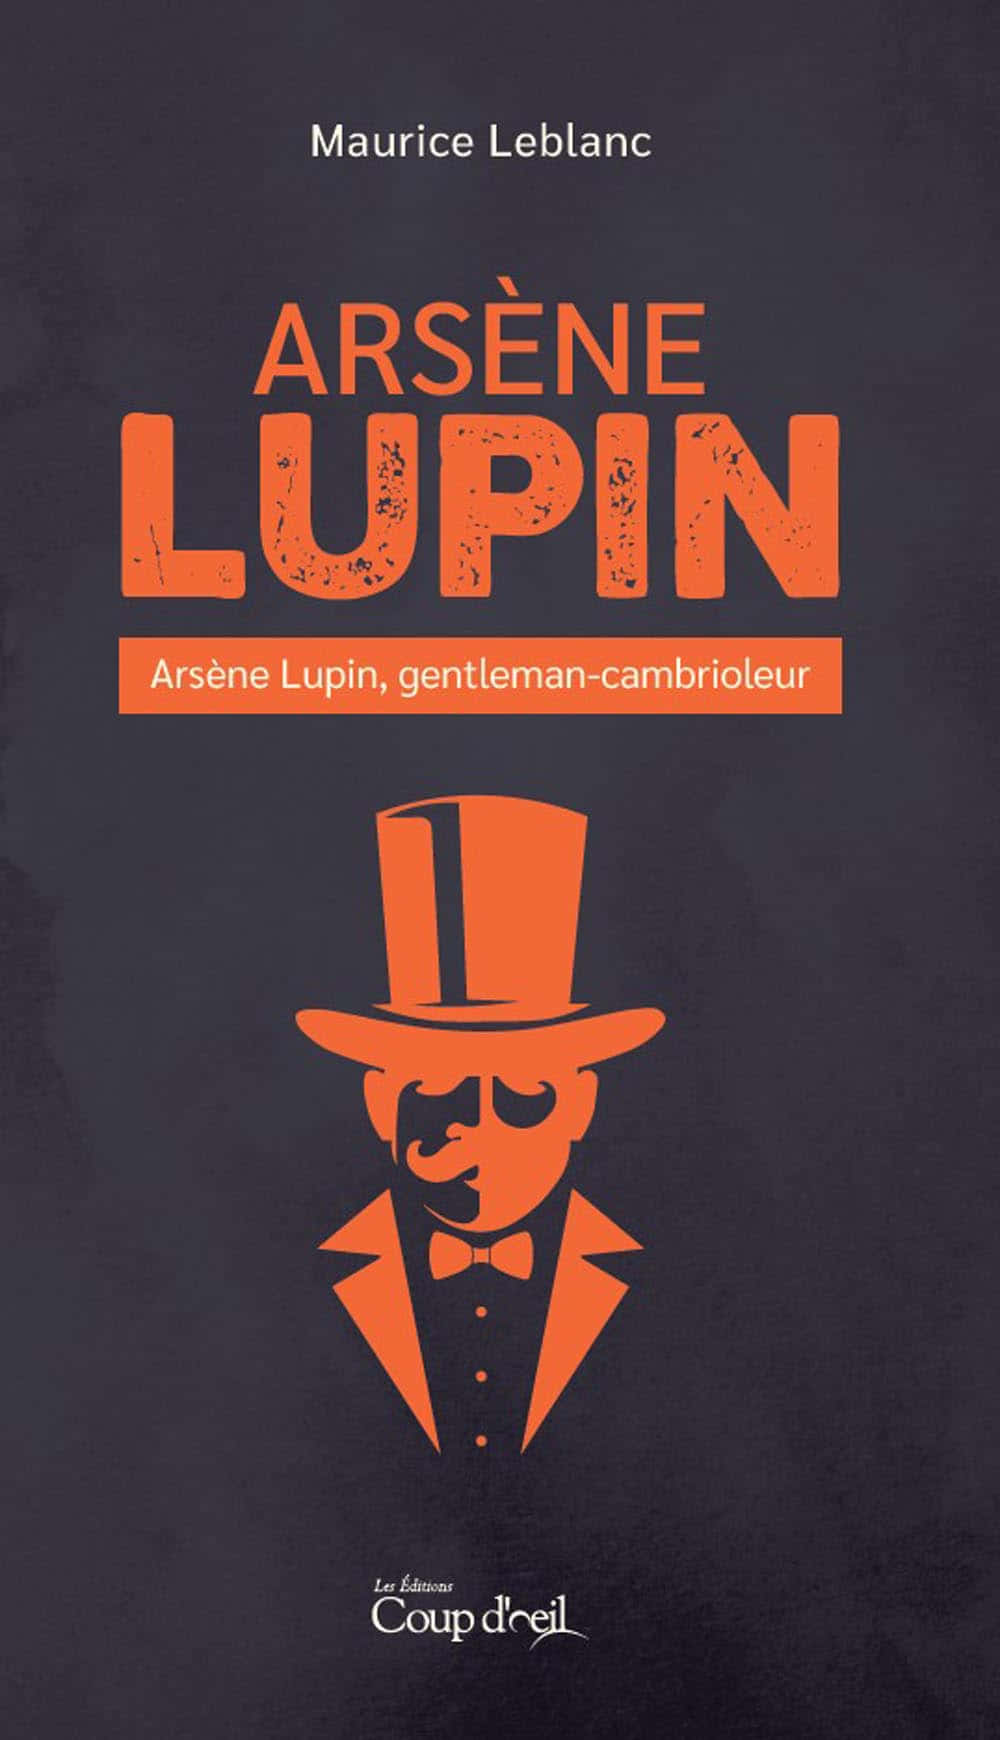 Arsenè Lupin - A Mysterious Gentleman Thief Wallpaper